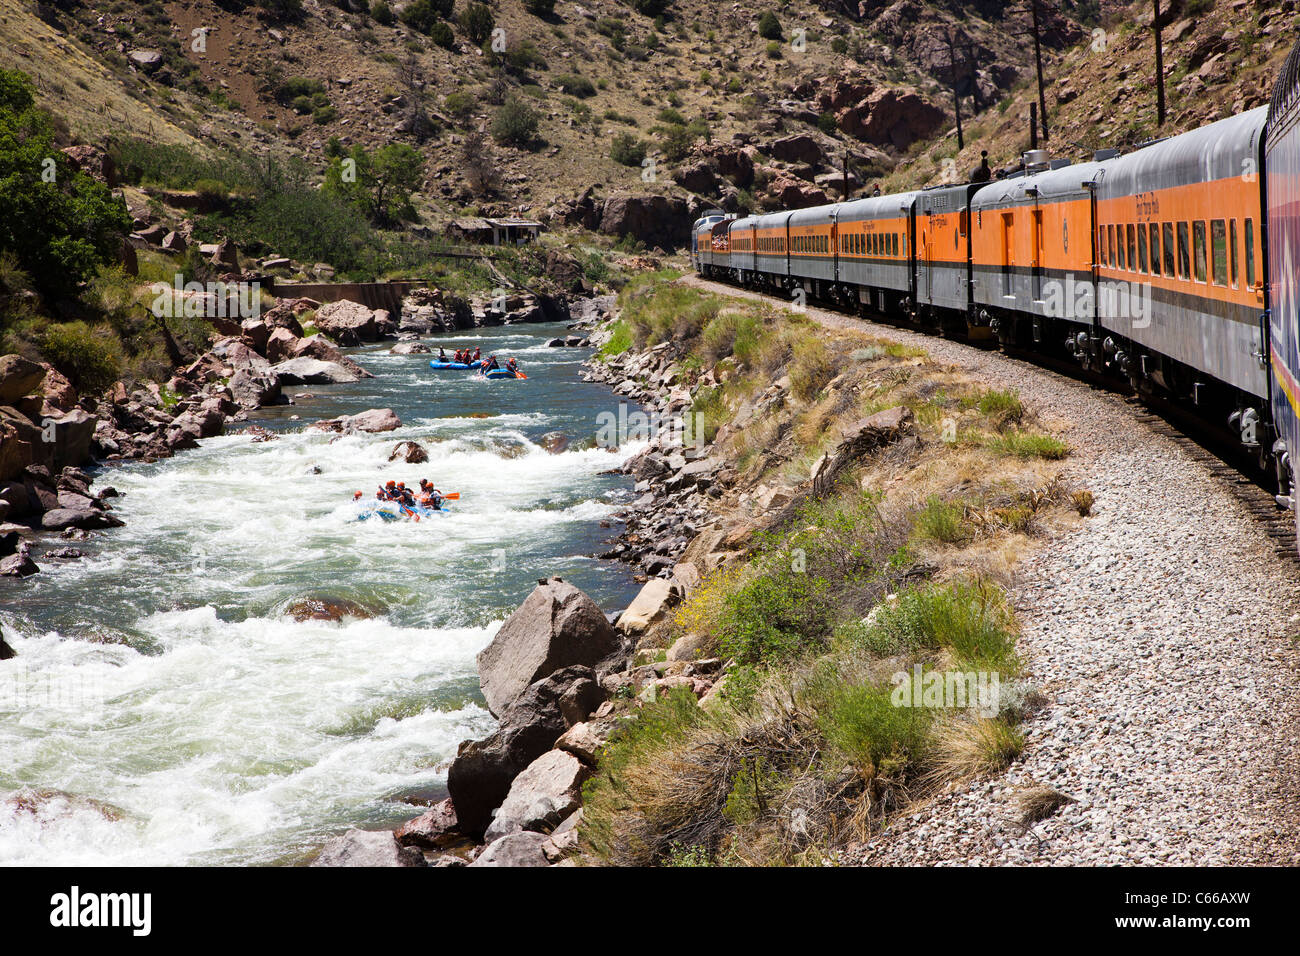 Popular tourist train runs through the 1,000' deep Royal Gorge Route along the Arkansas River, Central Colorado, USA Stock Photo